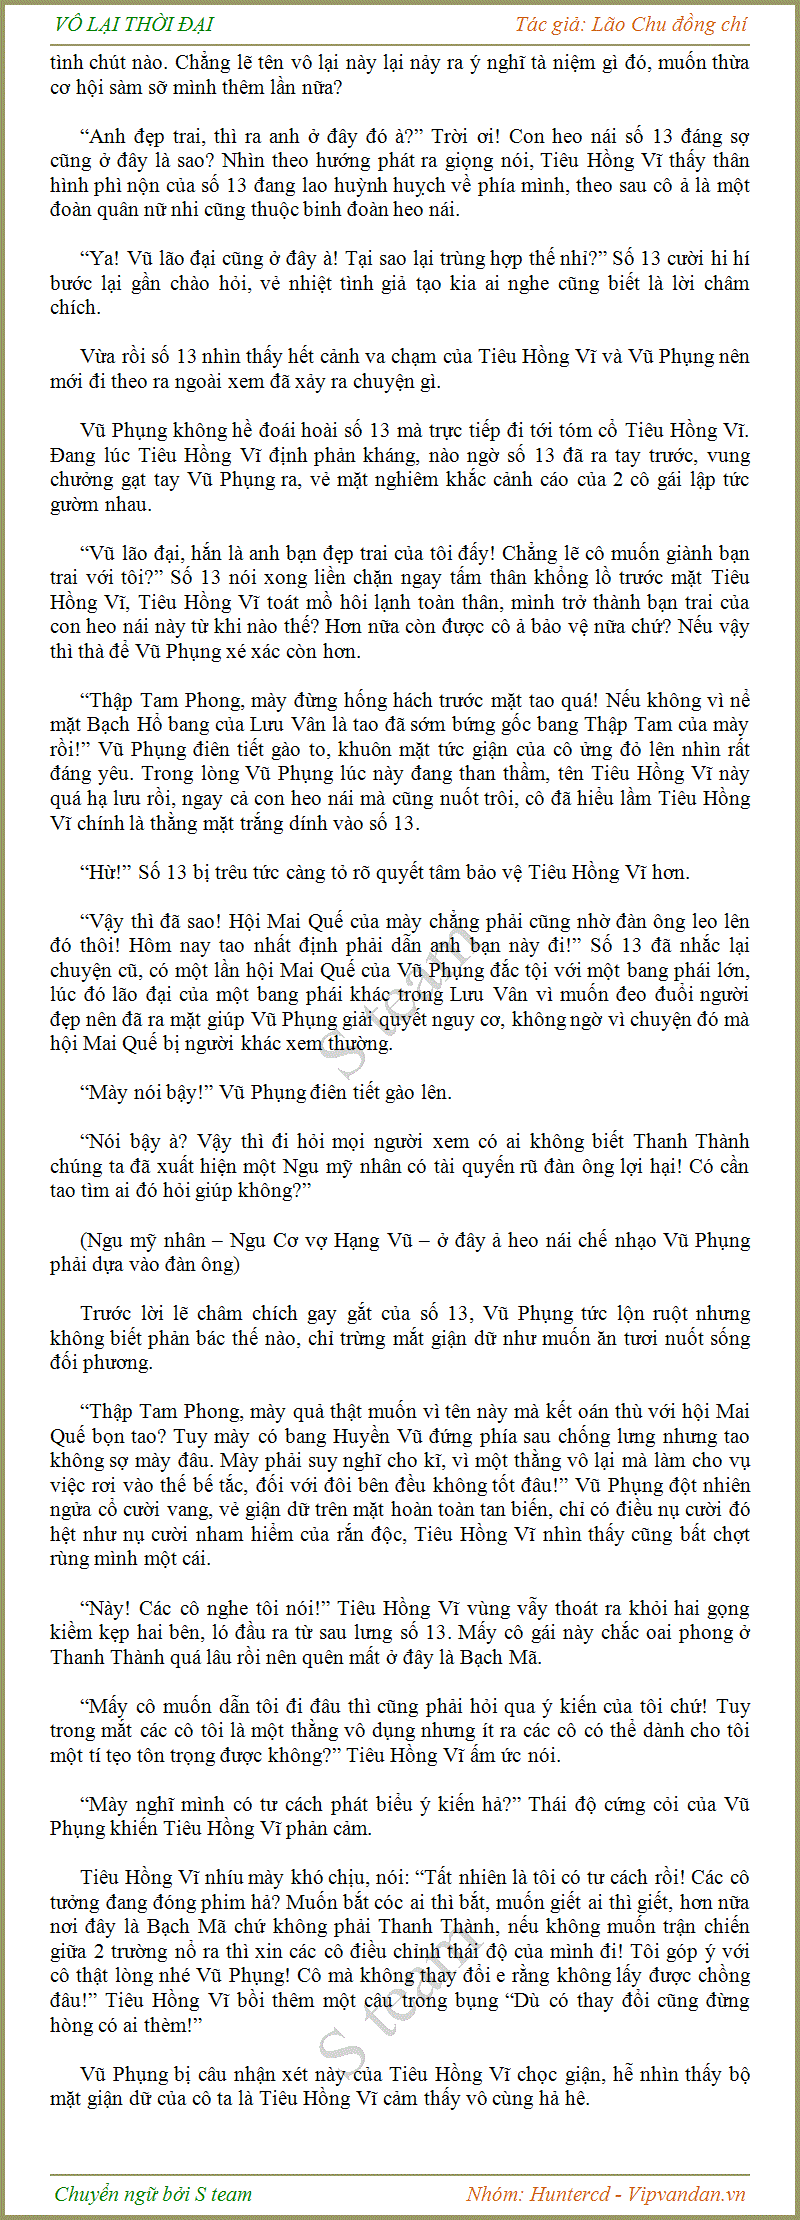 Vô Lại Thời Đại - Lão Chu Đồng Chí - Chương 107